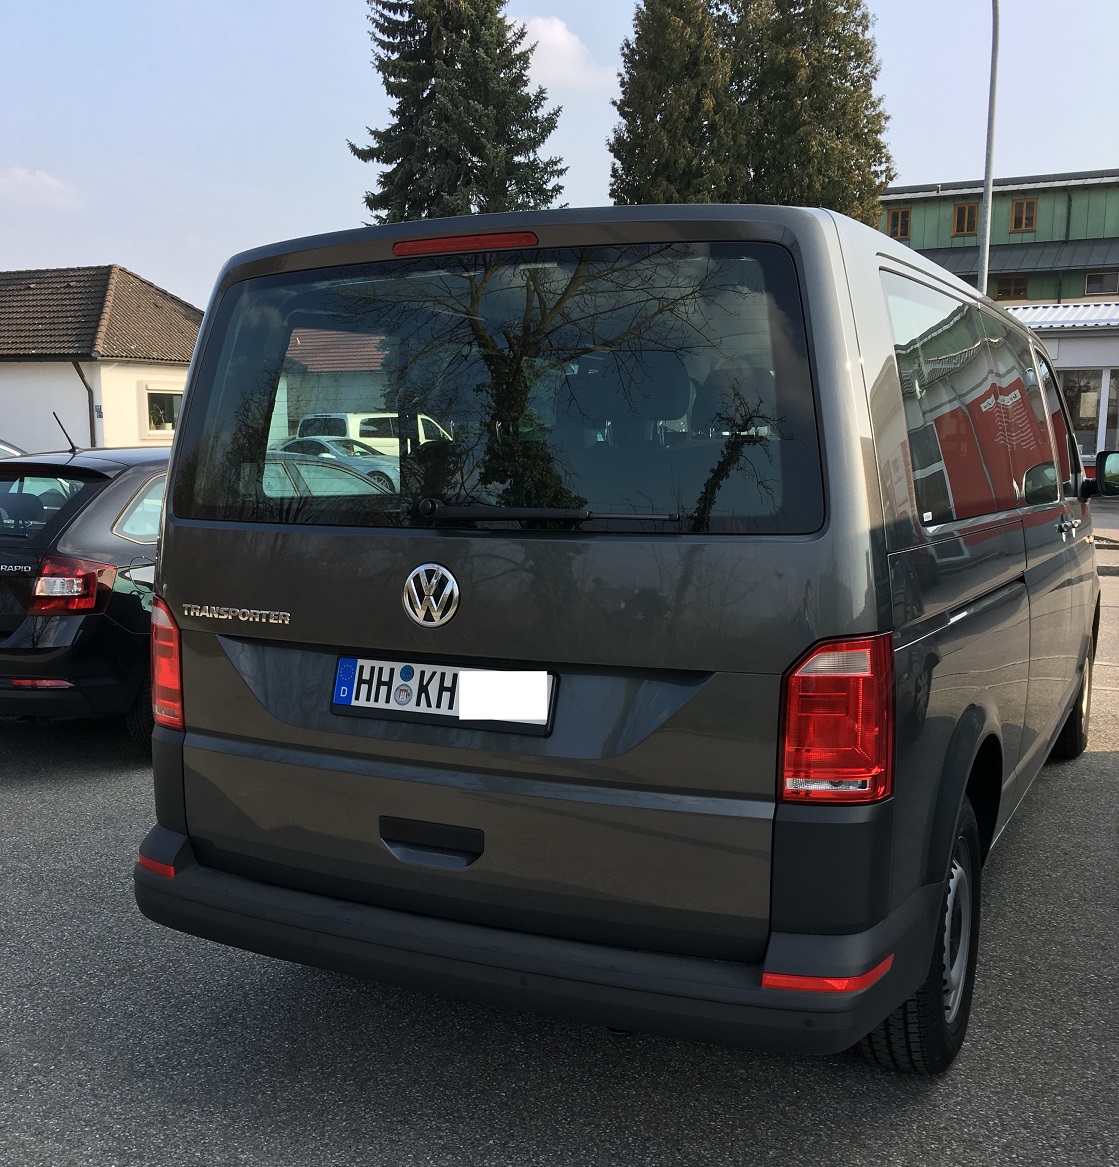 VW Transporter .jpg